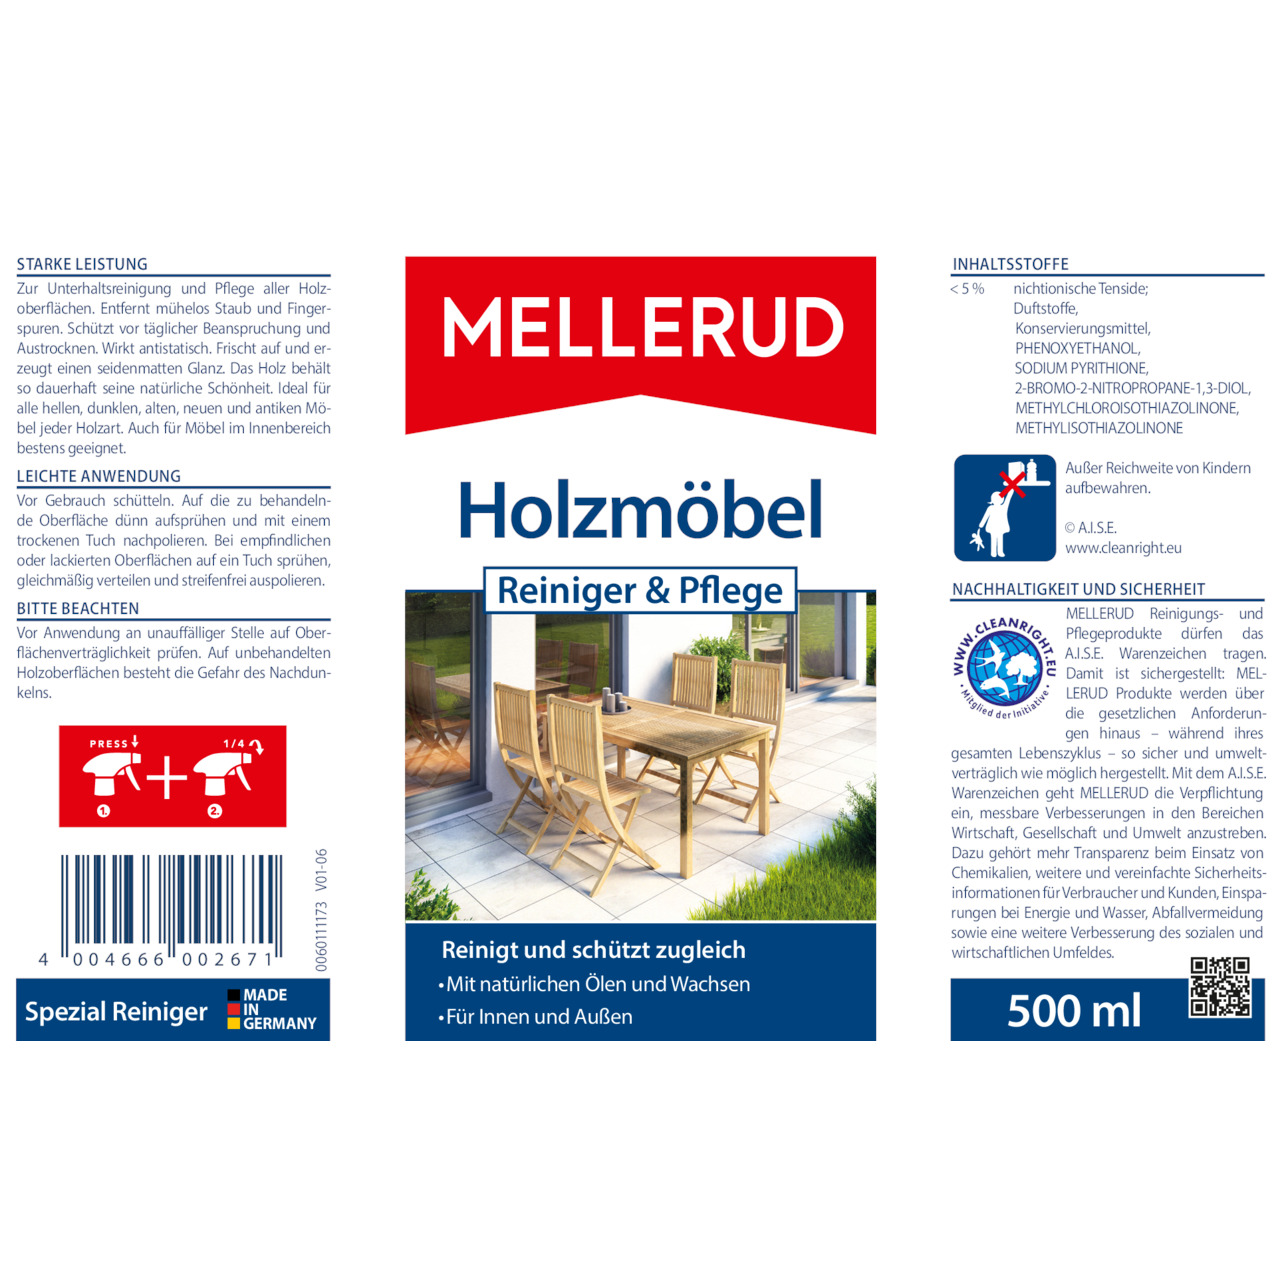 Holzmöbel Reiniger & Pflege 0,5 l